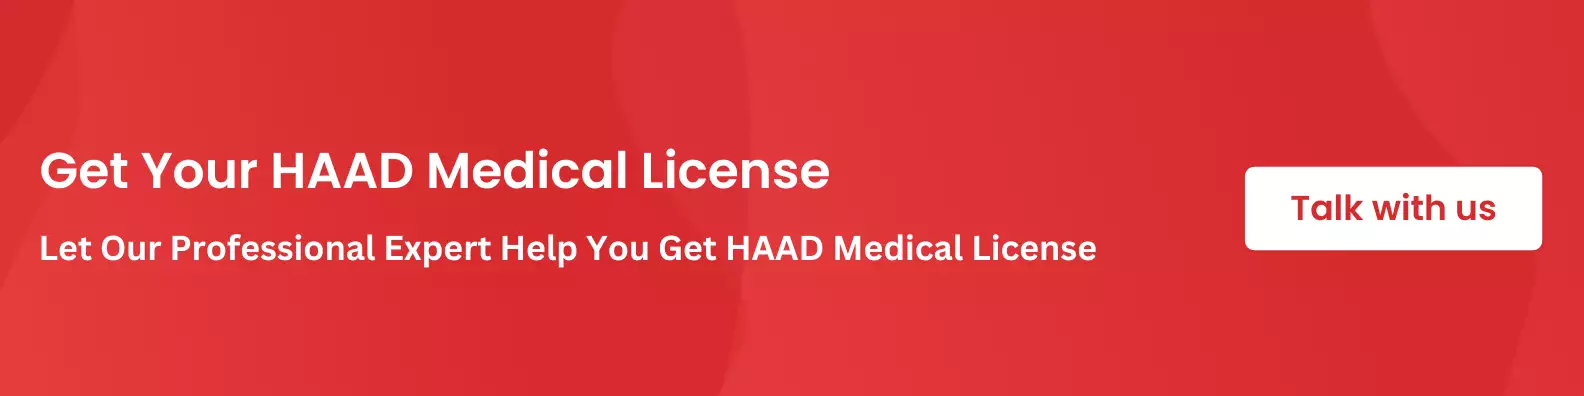 haad-medical-license